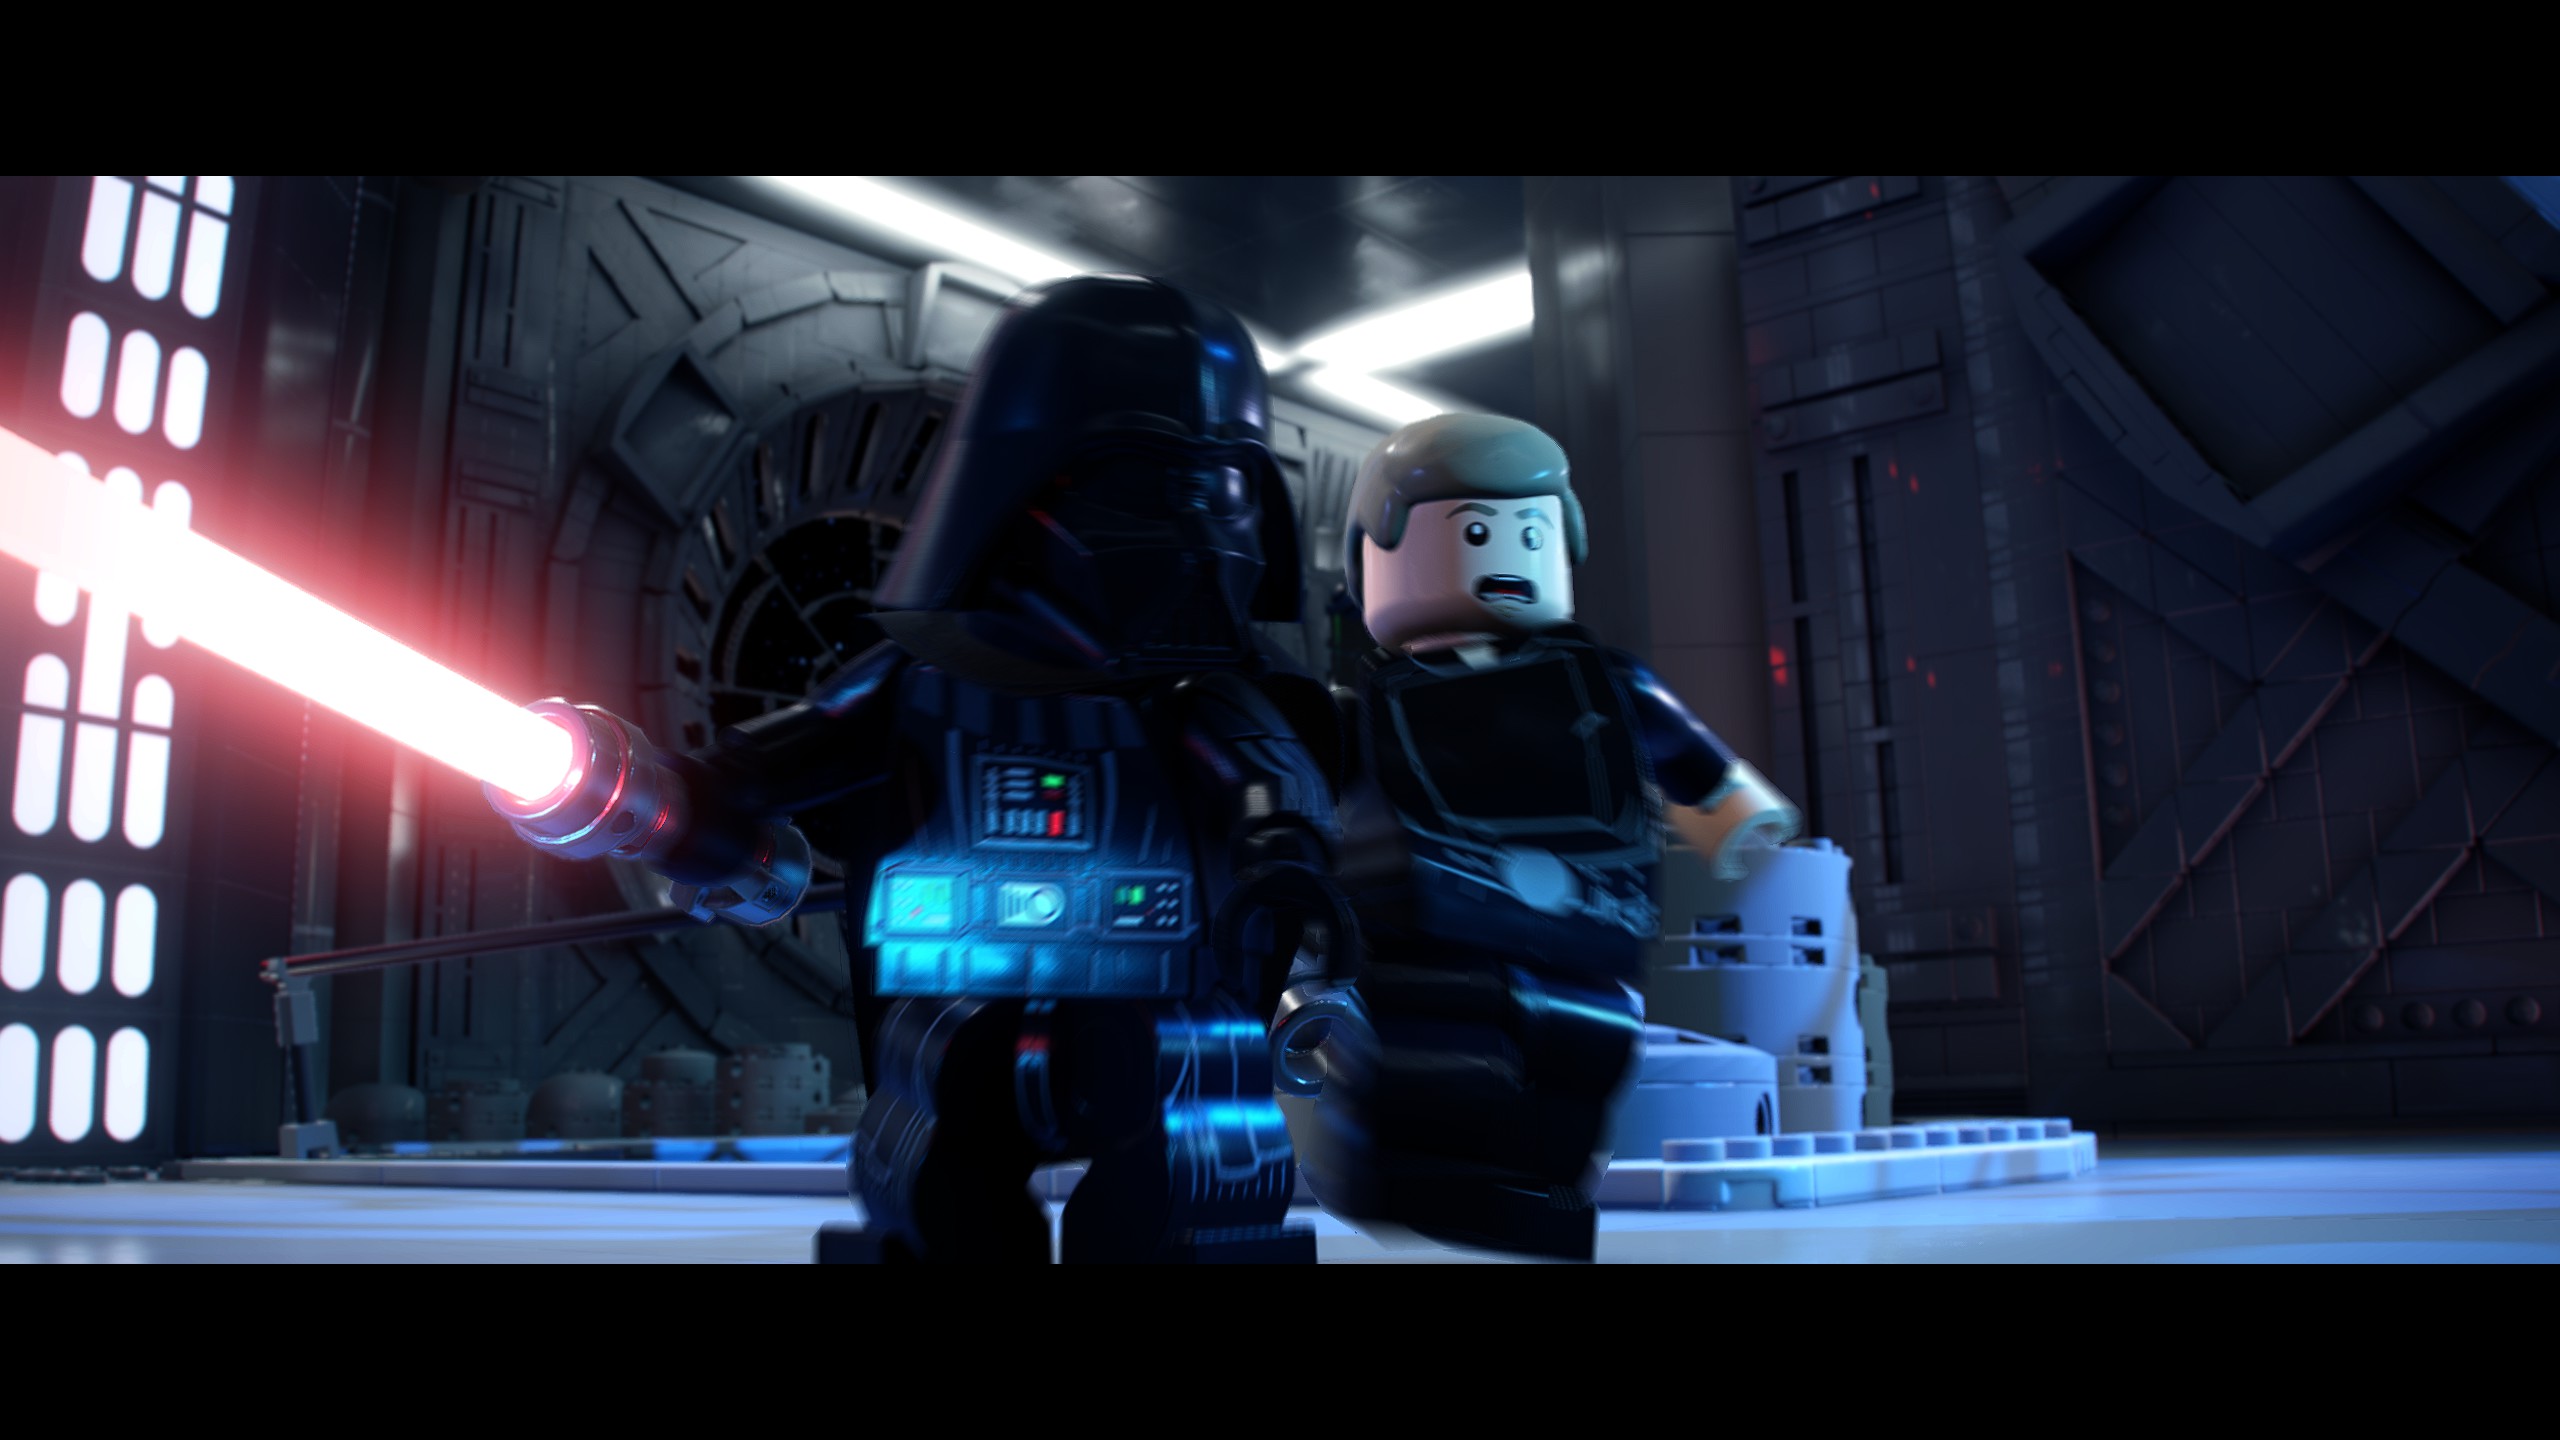 Star Wars LEGO Star Wars Darth Vader Luke Skywalker LEGO TV Wallpaper -  Resolution:2560x1440 - ID:1350093 